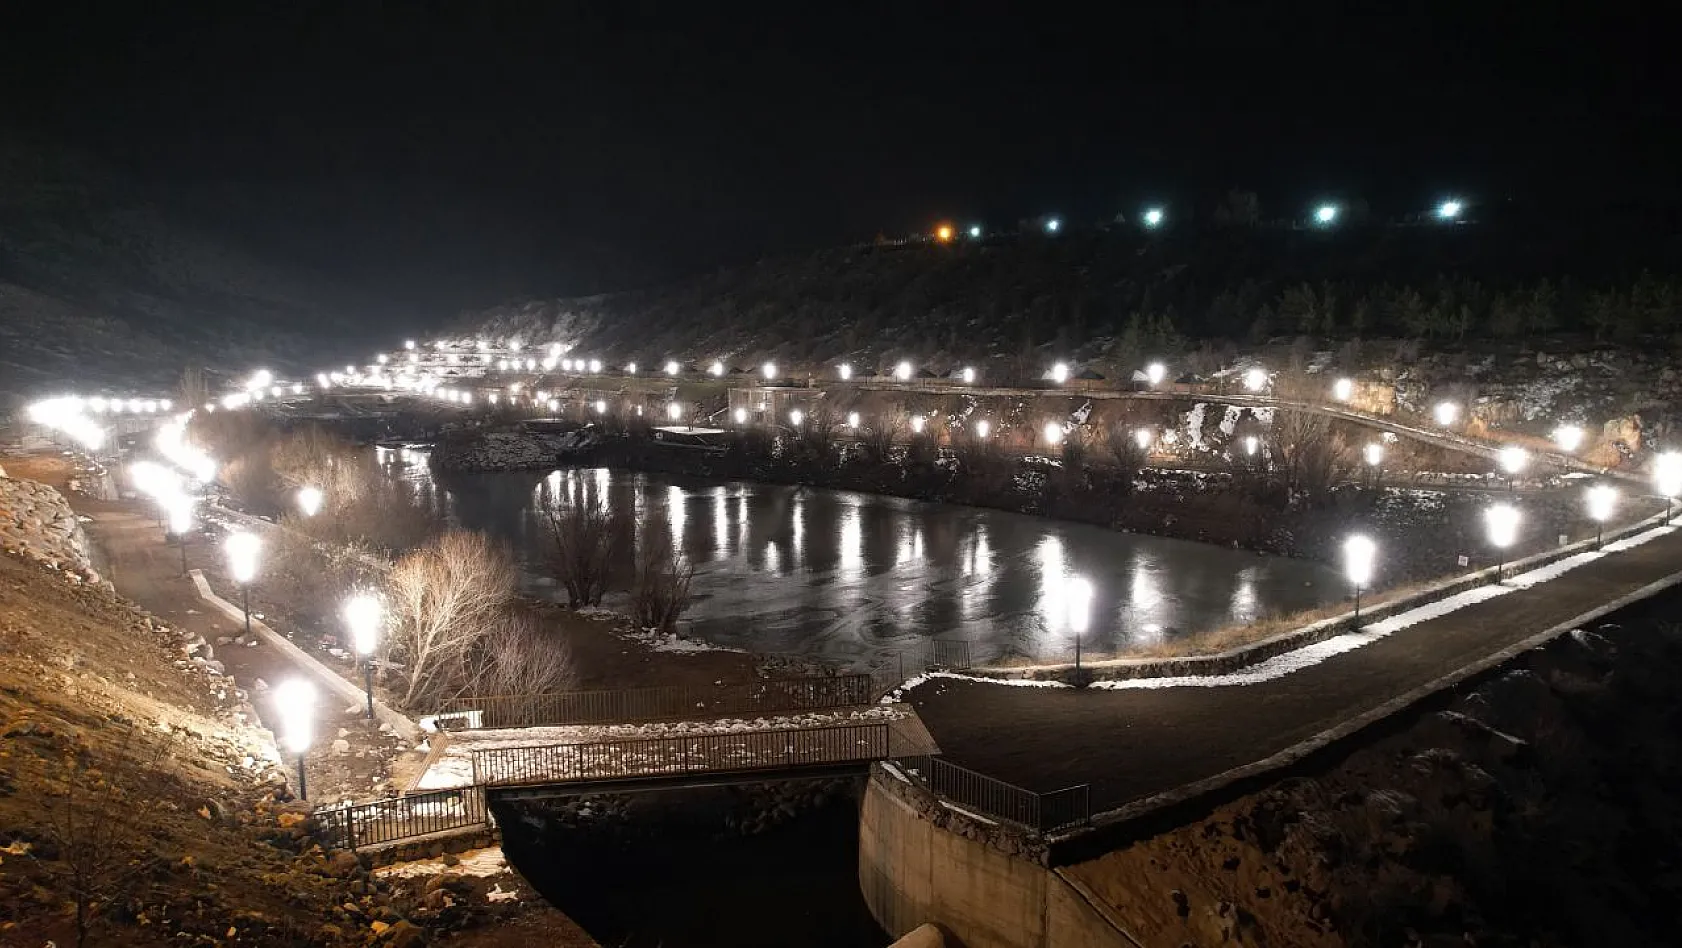 Zincidere 100. Yıl Mesire alanı Gece Işıl Işıl